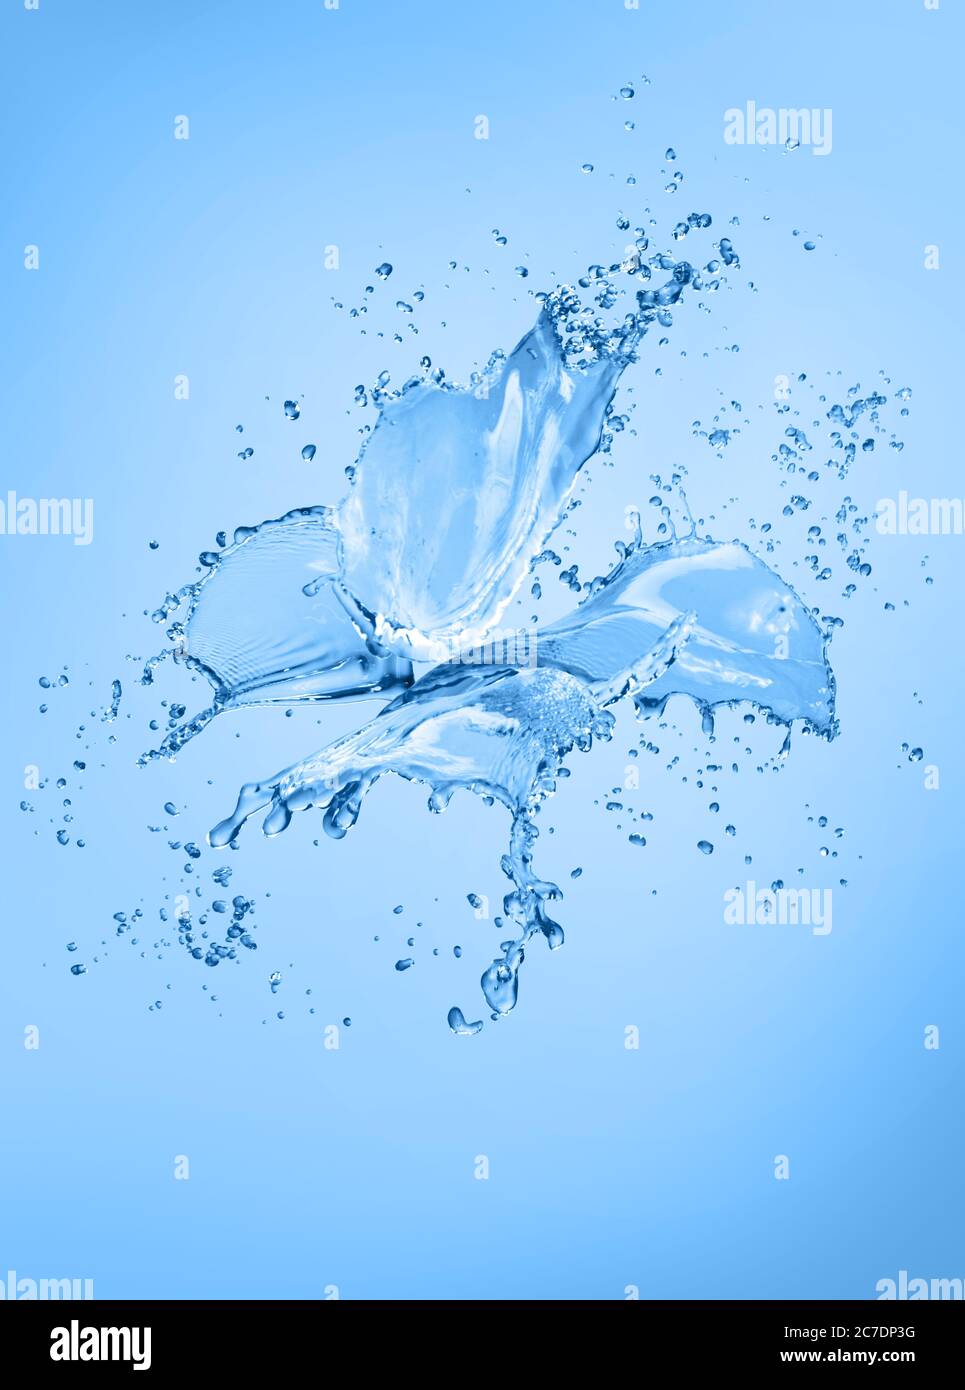 Farfalla realistica fatta di spruzzi di acqua e gocce isolato su sfondo blu Foto Stock